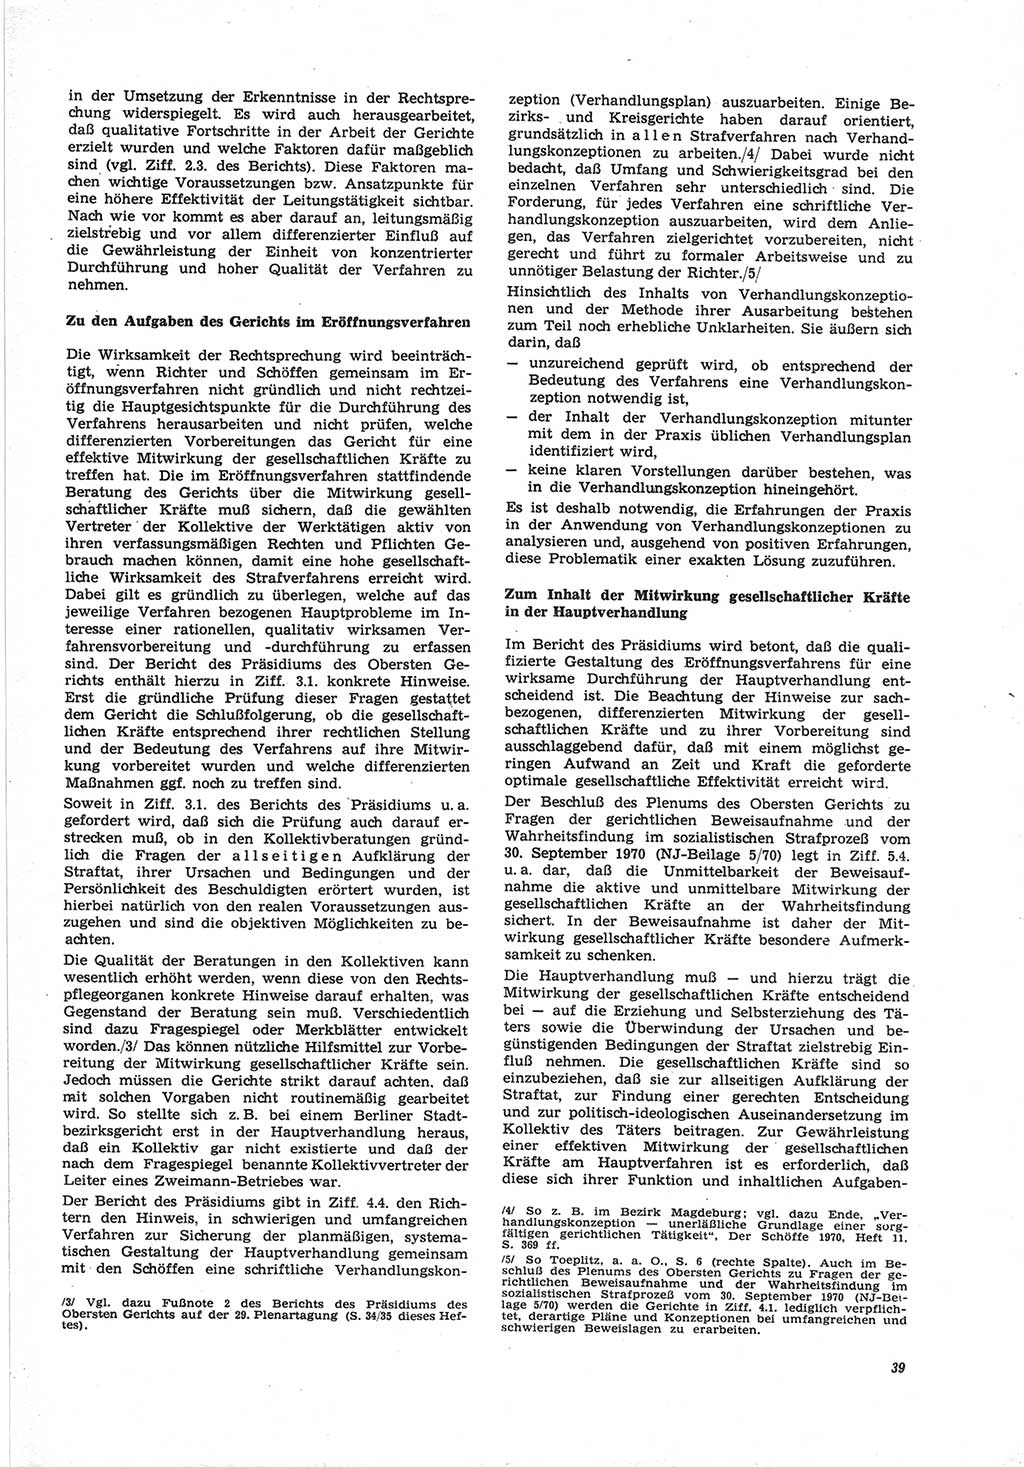 Neue Justiz (NJ), Zeitschrift für Recht und Rechtswissenschaft [Deutsche Demokratische Republik (DDR)], 25. Jahrgang 1971, Seite 39 (NJ DDR 1971, S. 39)